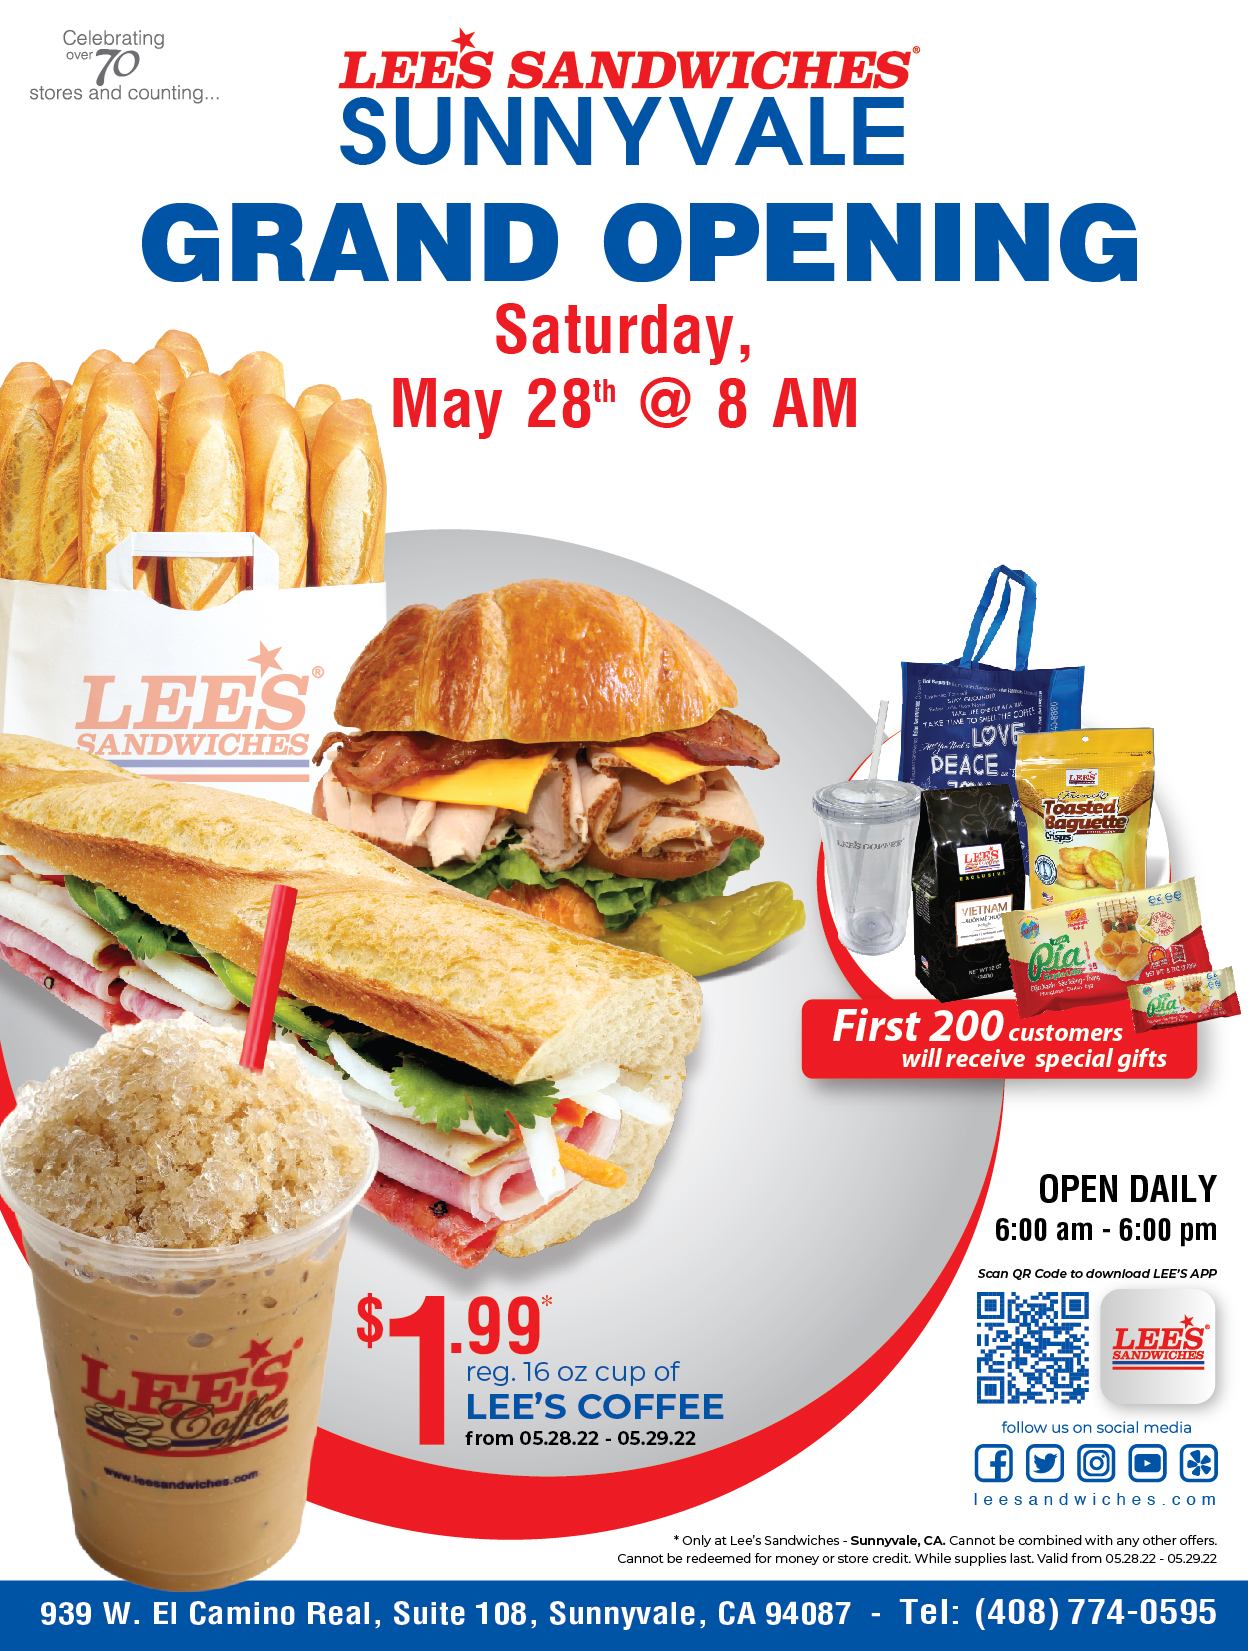 Lee's Sandwiches mở tiệm thứ 72 cuối tuần này, tại Sunnyvale, Bắc California